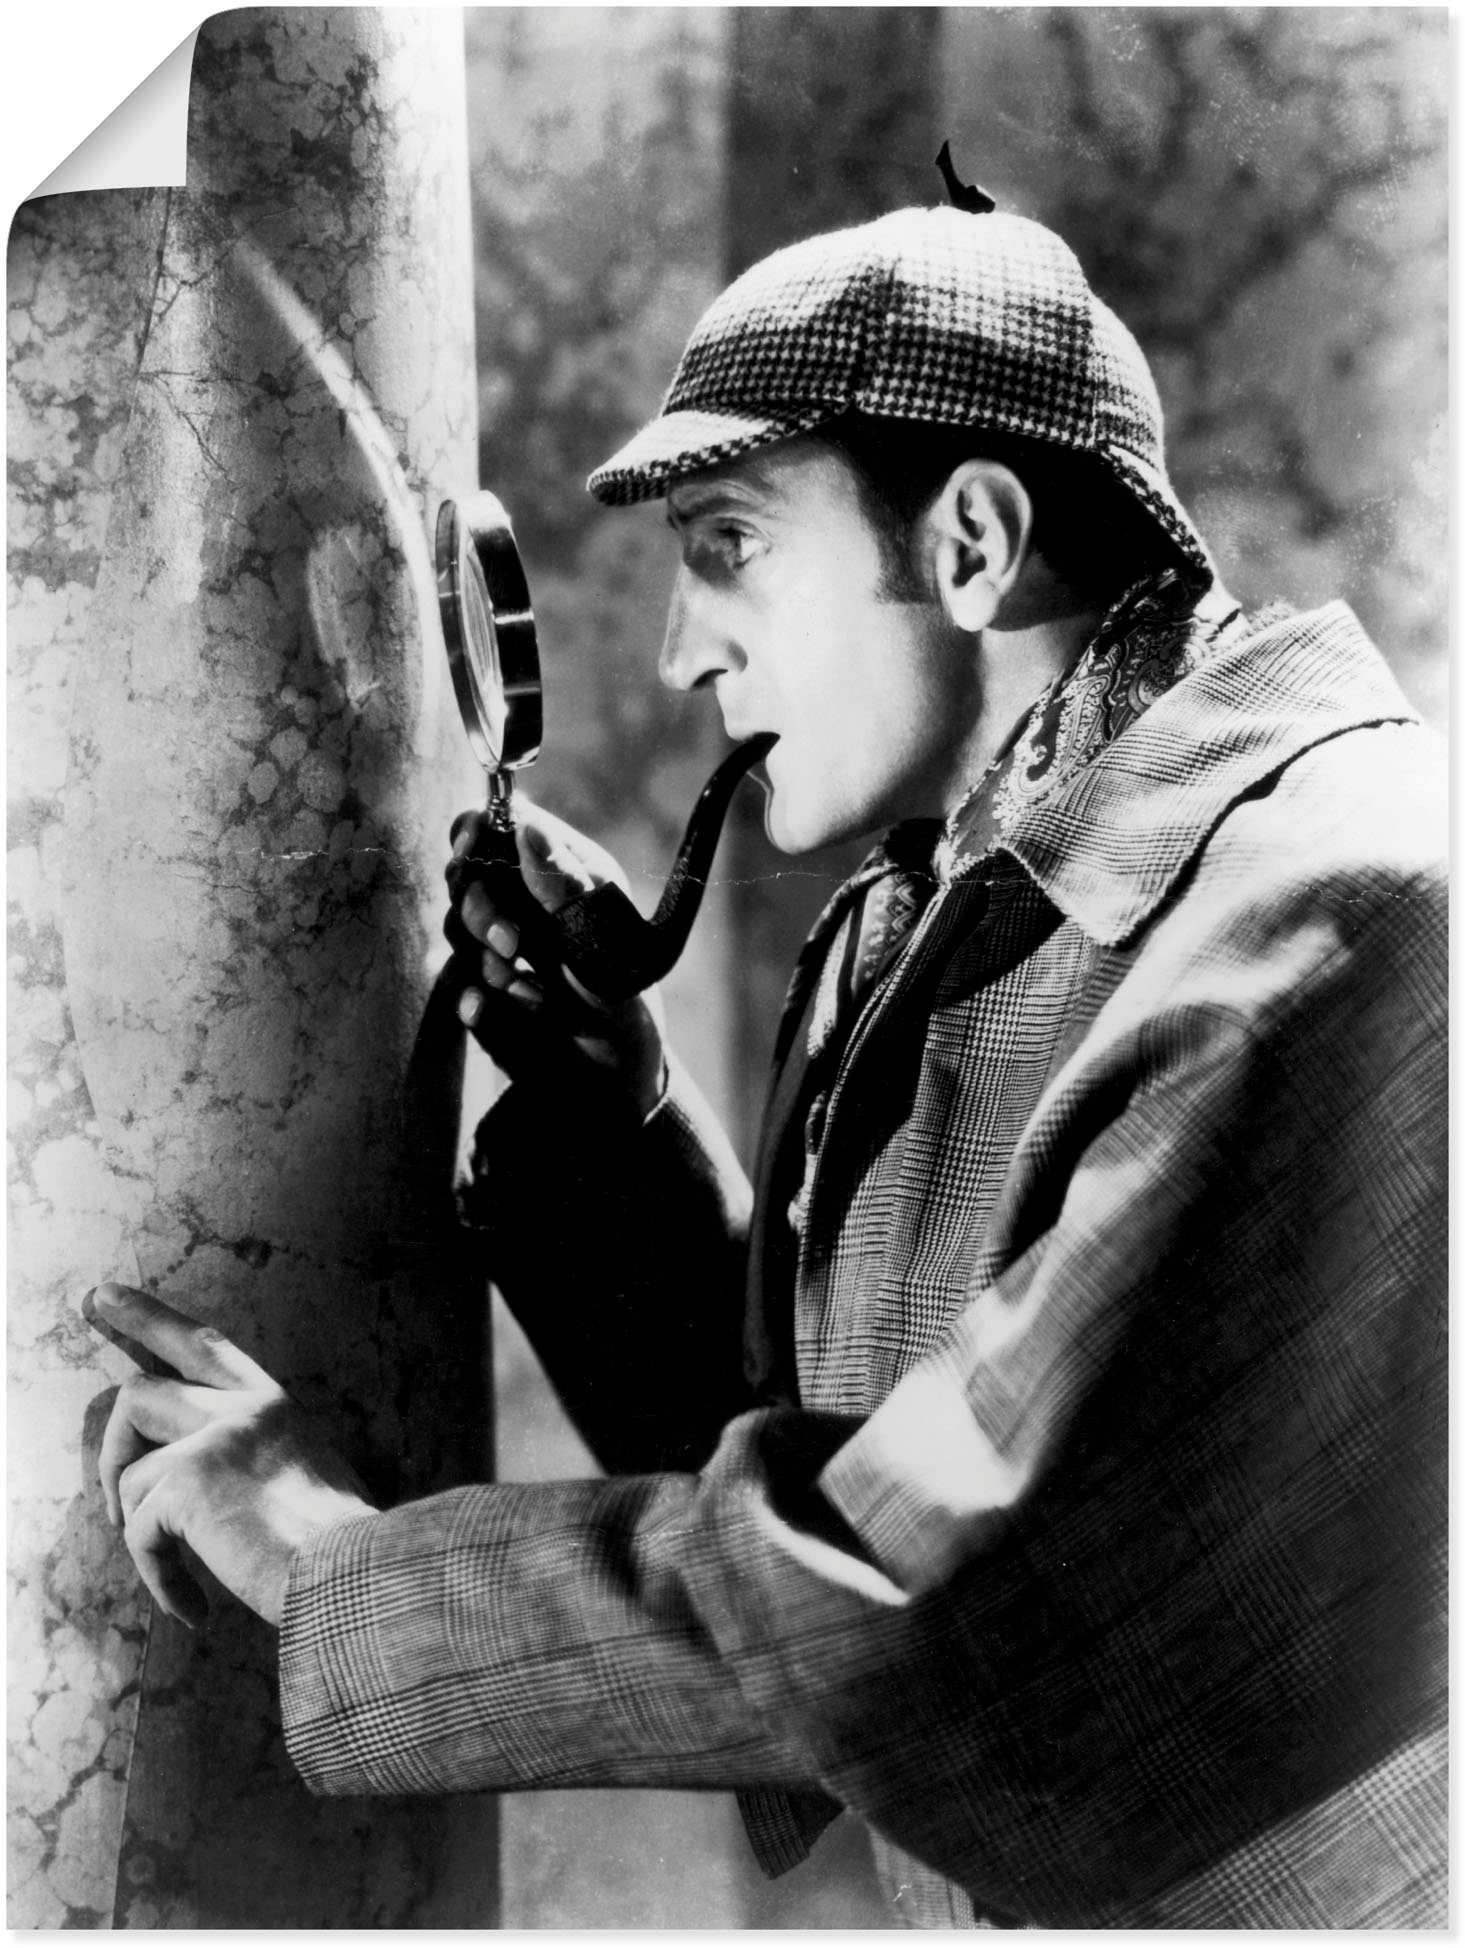 Wandaufkleber oder Leinwandbild, 1939, Wandbild versch. Sherlock Holmes Film Größen in St), als Artland (1 Poster